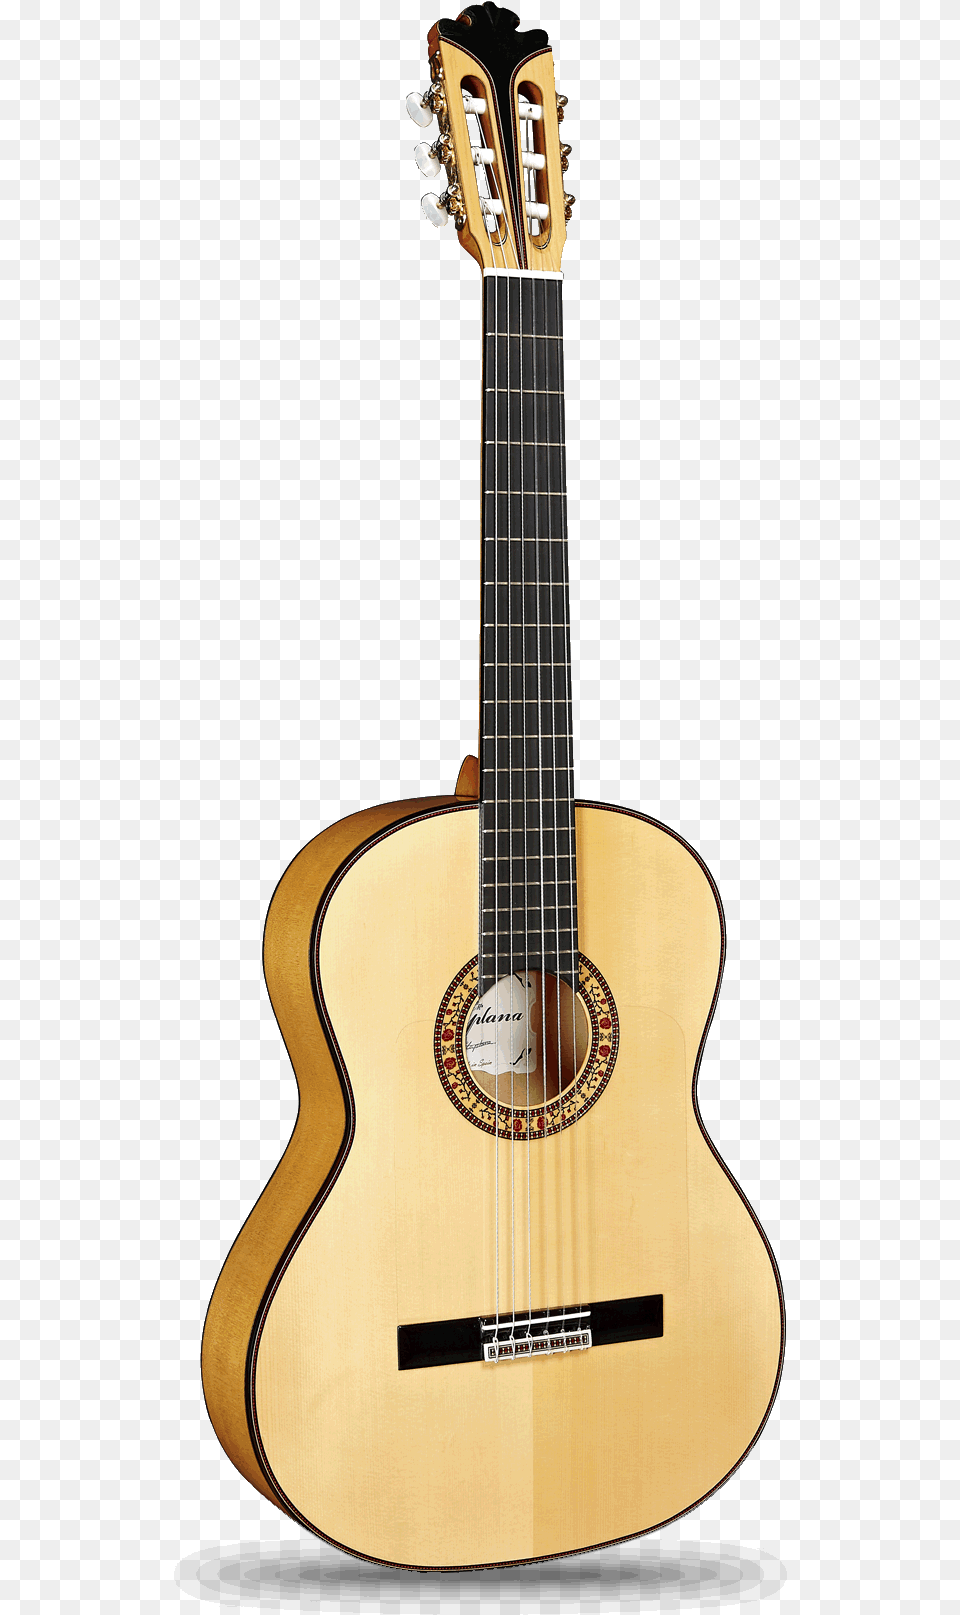 Signature Guitars Spain Guitar, Musical Instrument Png